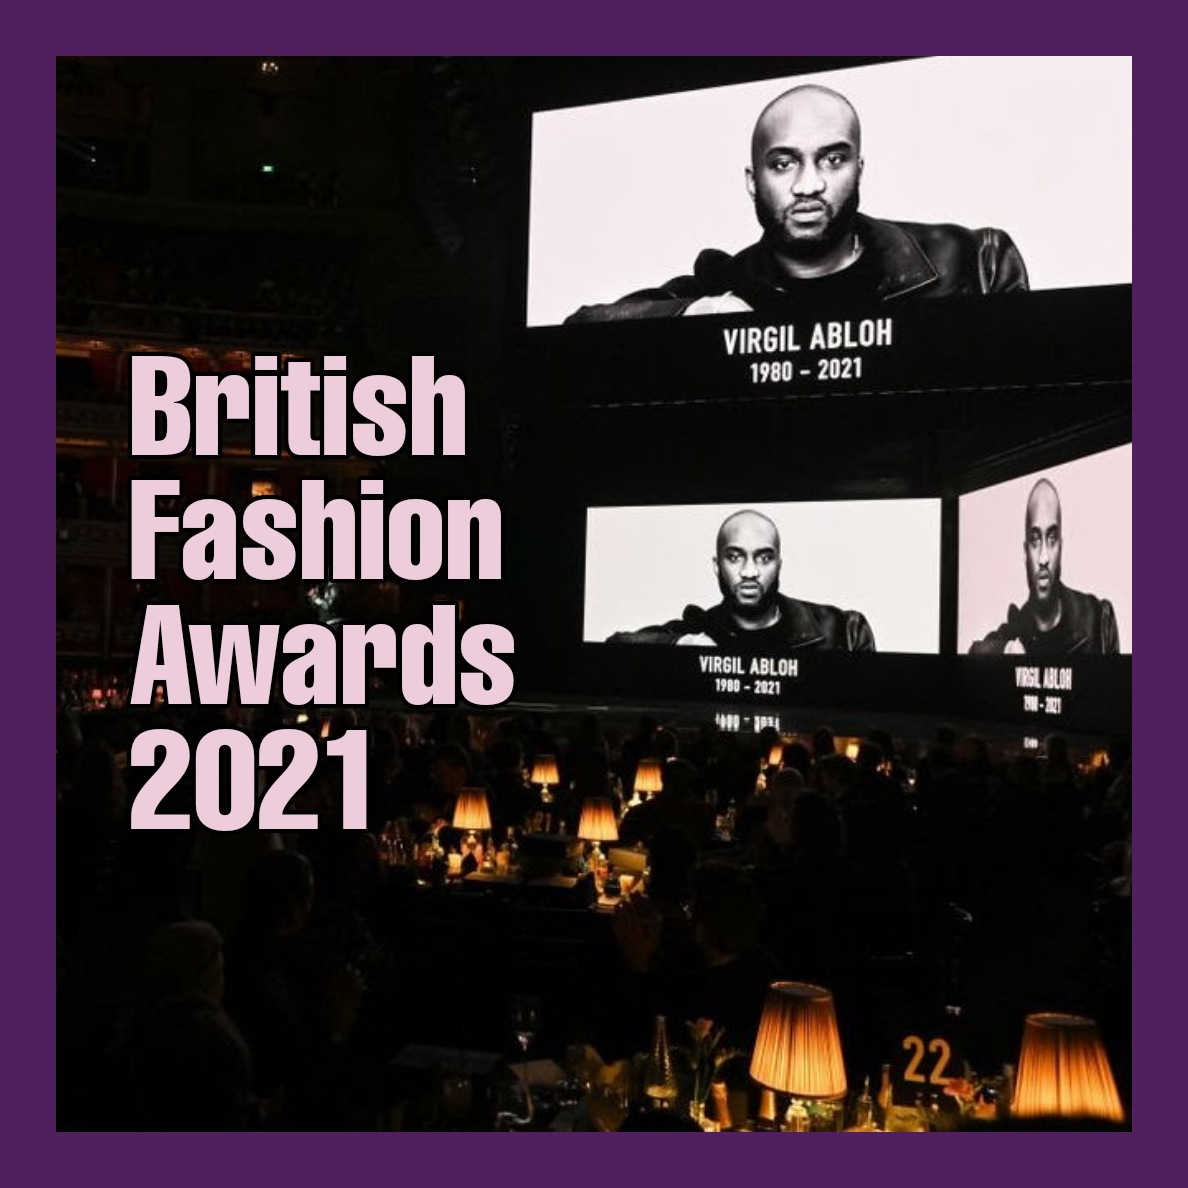 British Fashion Awards 2021: la lista dei vincitori e il ricordo di Virgil Abloh, il designer afroamericano scomparso due giorni fa all'età di 41 anni.